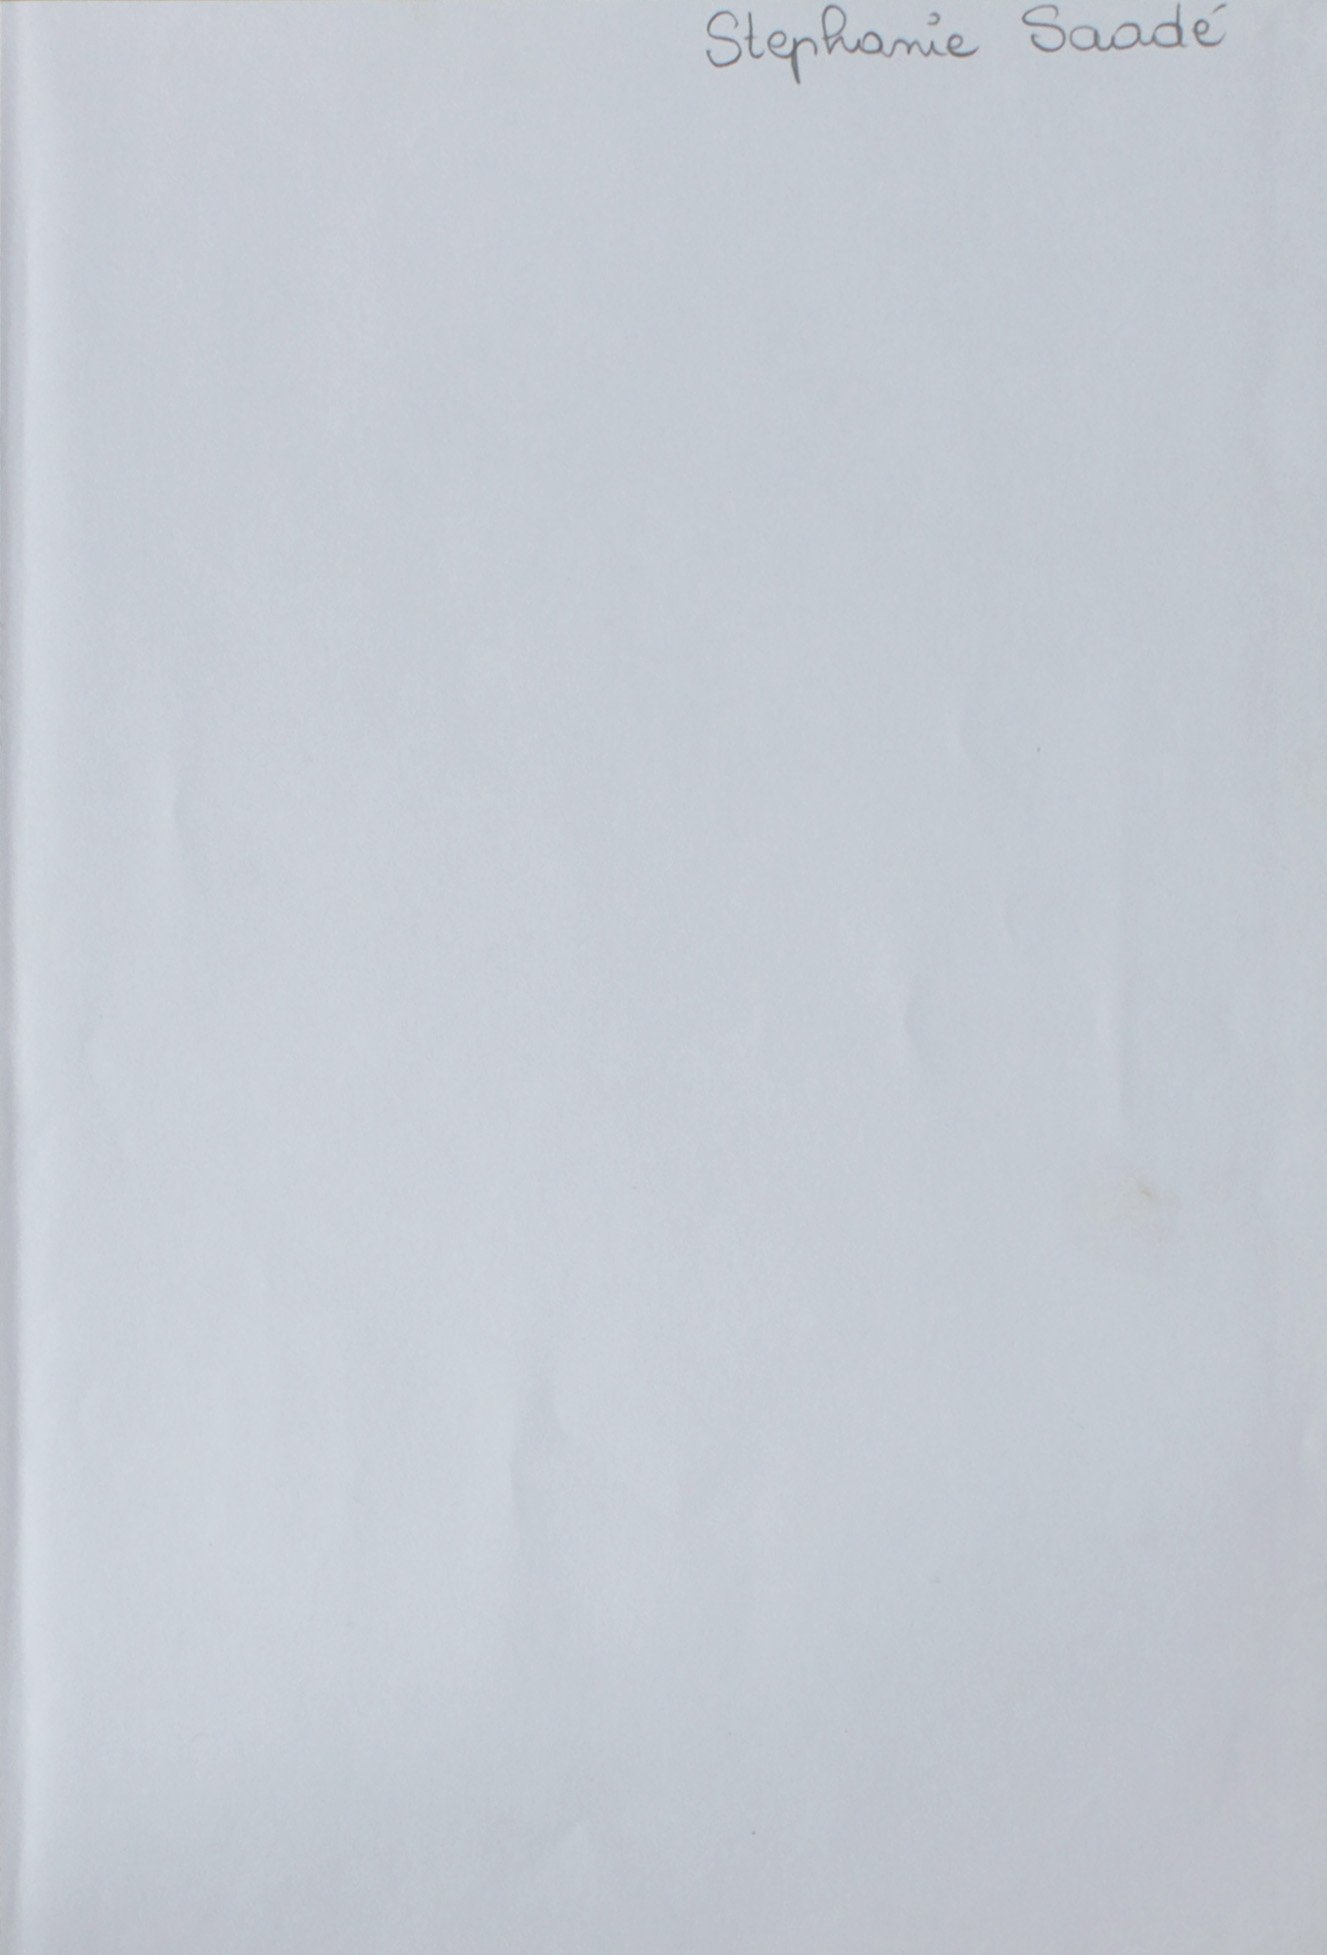  Stéphanie Saadé, 2022, book page, pen, 27.4 x 18.6 cm / 31.5 x 23 cm each (framed), unique variation  &nbsp;« La nouvelle encyclopédie de la jeunesse » Dis, comment ça marche ?, 300 questions, 300 réponses, Daniel Alibert-Kouraguine, Jean-Jacques Ba